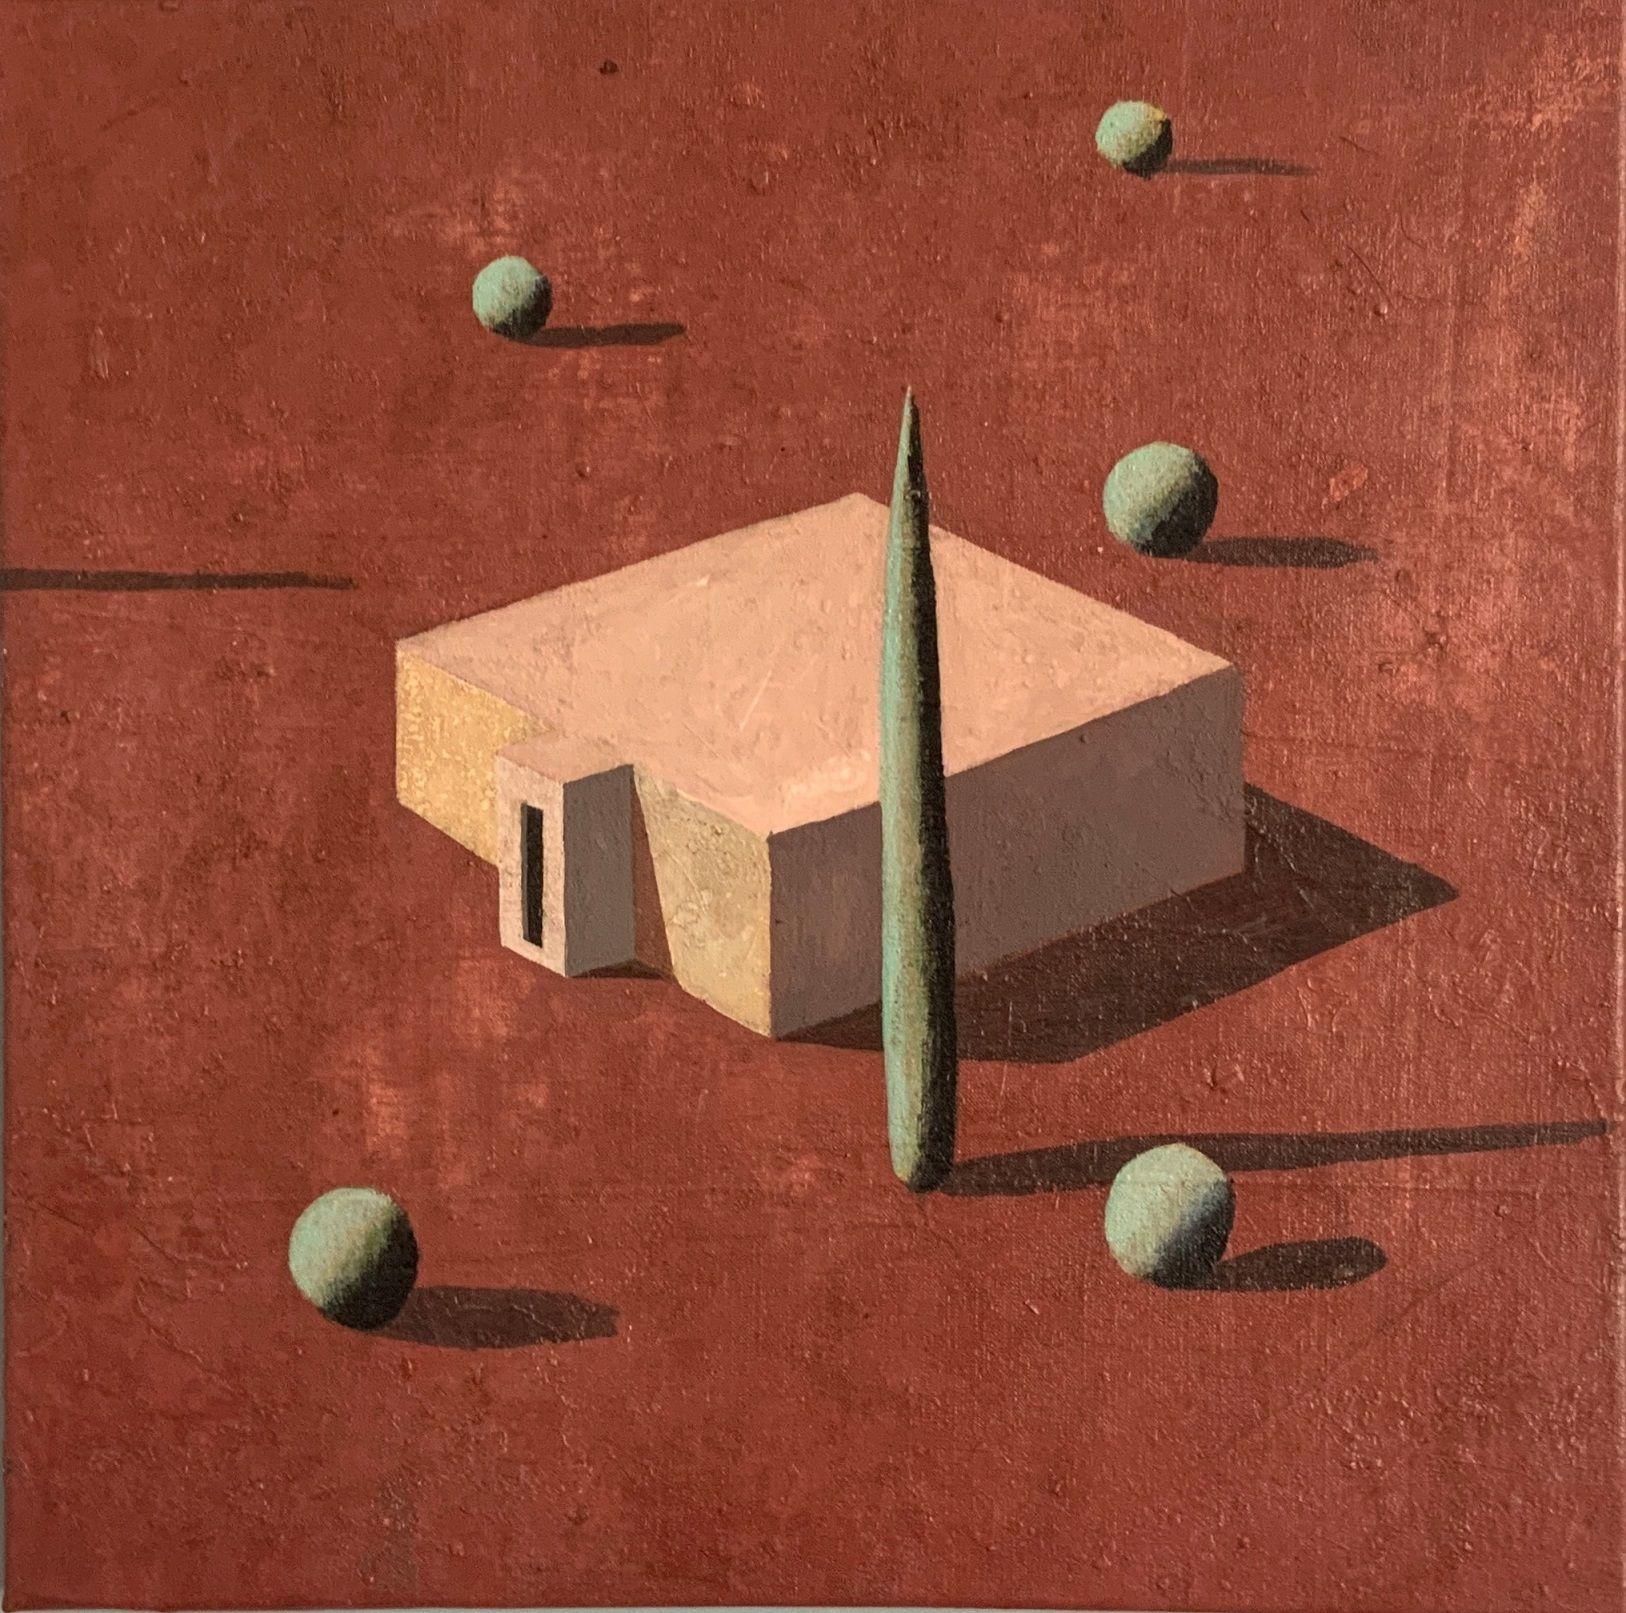 JAIN-B est une peinture acrylique sur toile unique de l'artiste contemporain Ramon Enrich, dont les dimensions sont de 50 x 50 cm (19,7 × 19,7 in). 
L'œuvre est signée, vendue non encadrée et accompagnée d'un certificat d'authenticité. 

Ramon HAR